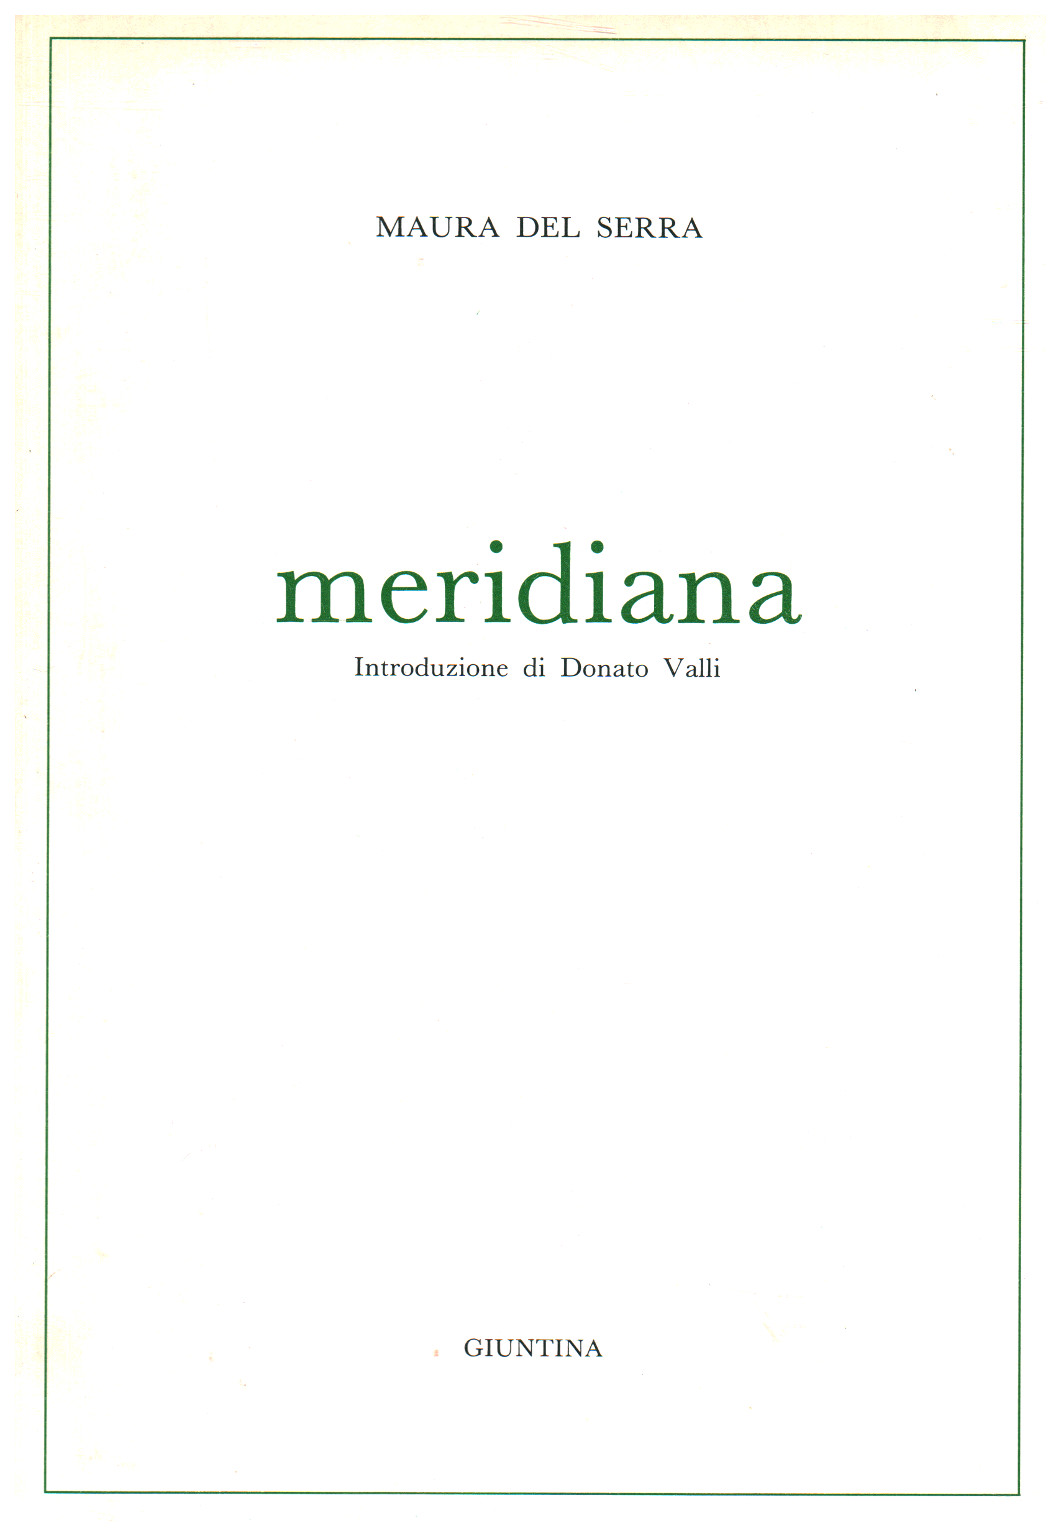 Meridiana, s.a.